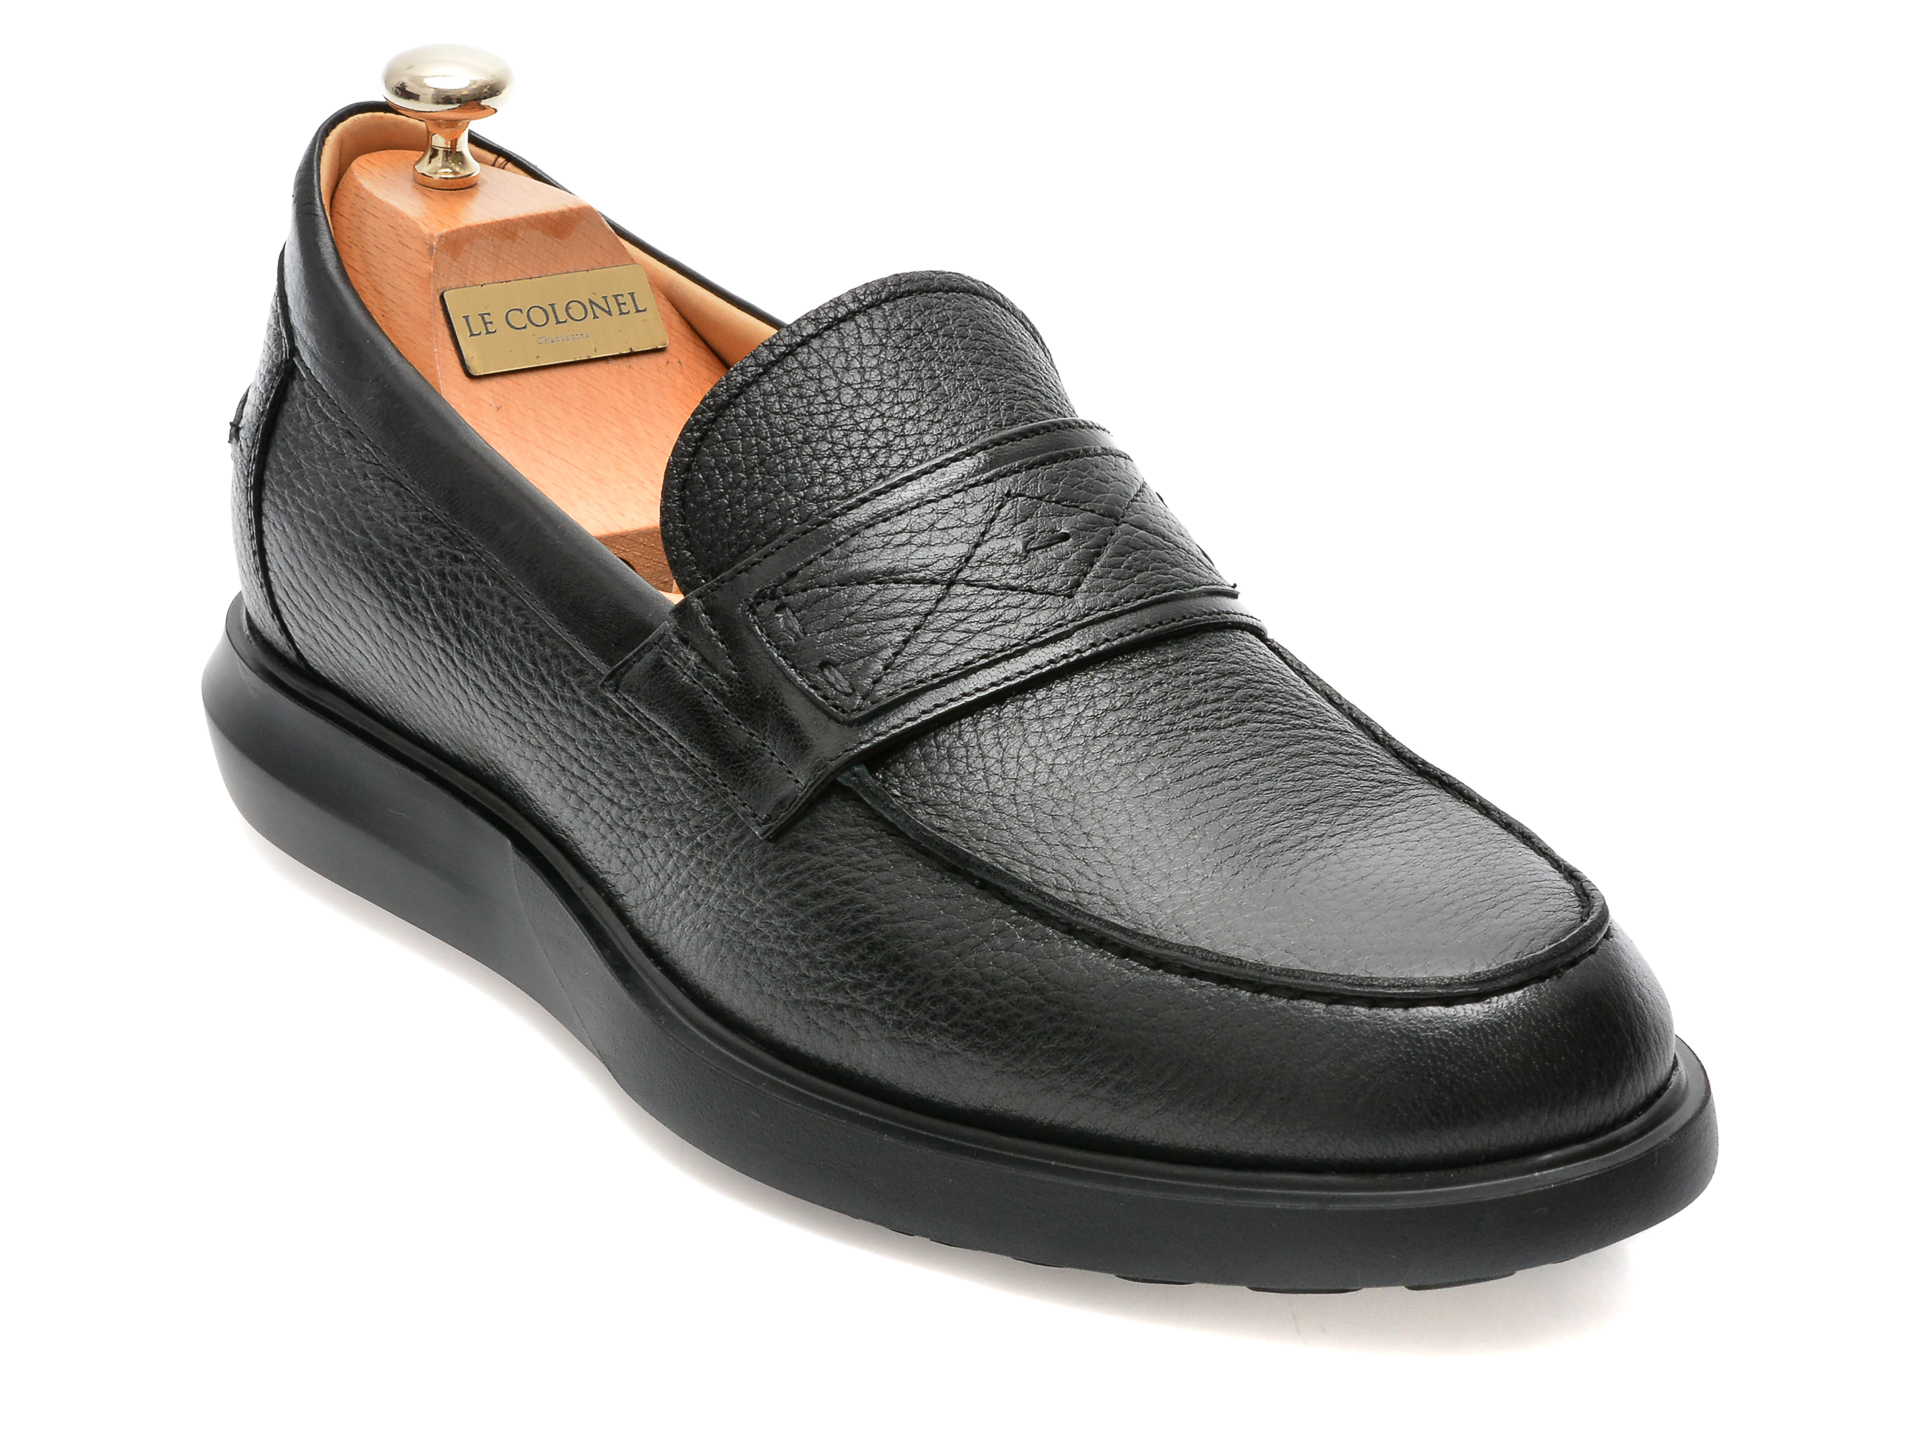 Pantofi LE COLONEL negri, 66616, din piele naturala Incaltaminte Barbati 2023-09-27